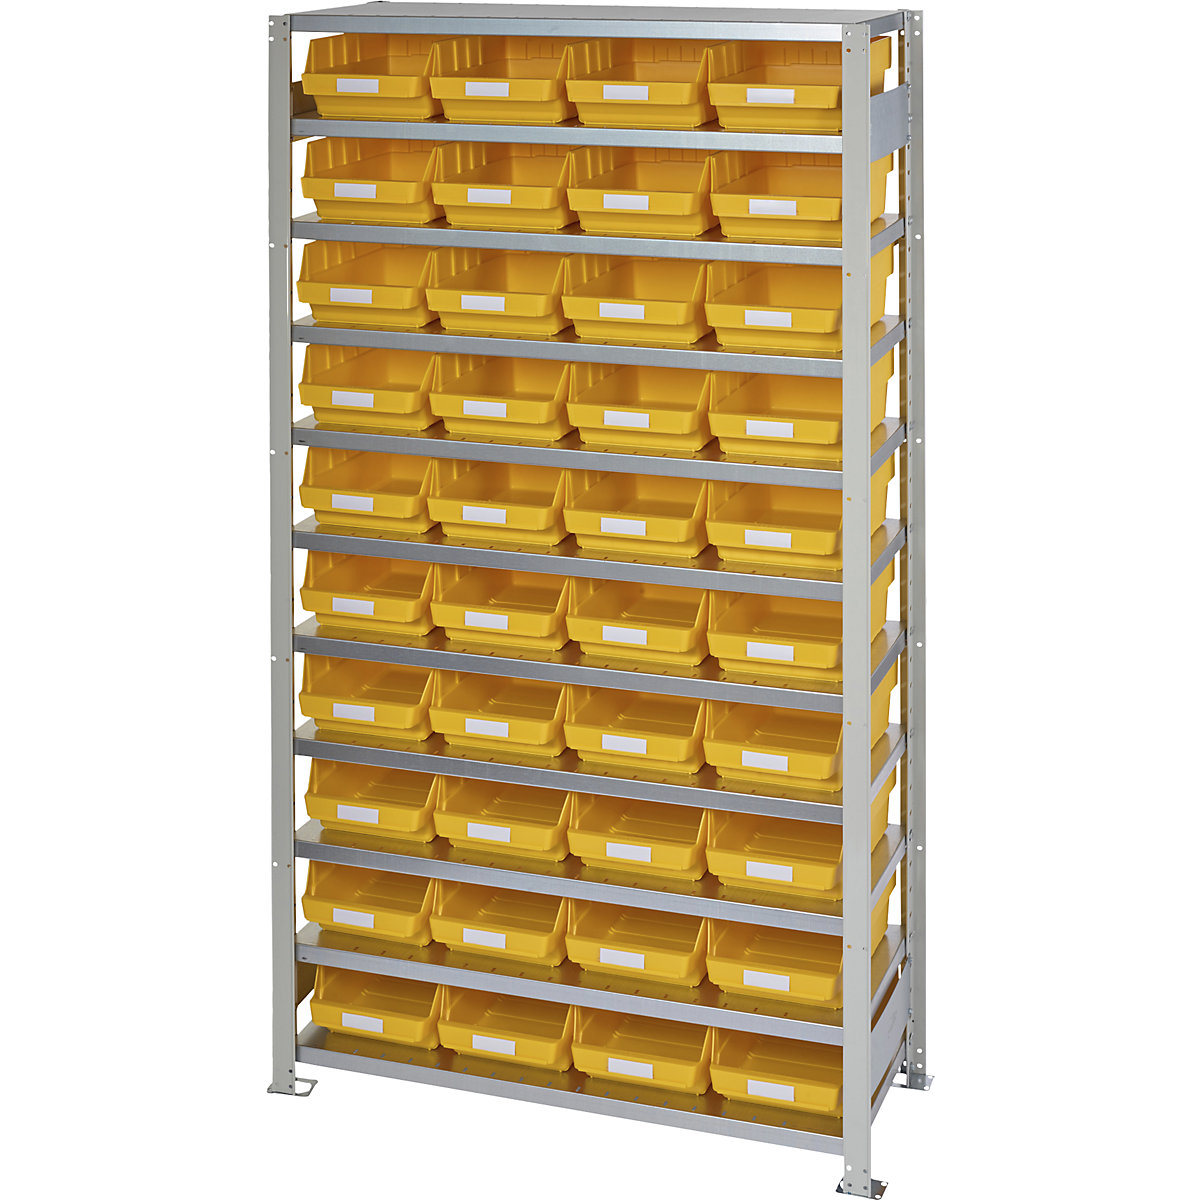 Összedugaszolós állvány dobozokkal – STEMO, állványmagasság 2100 mm, alapállvány, 400 mm mély, 40 sárga doboz-42